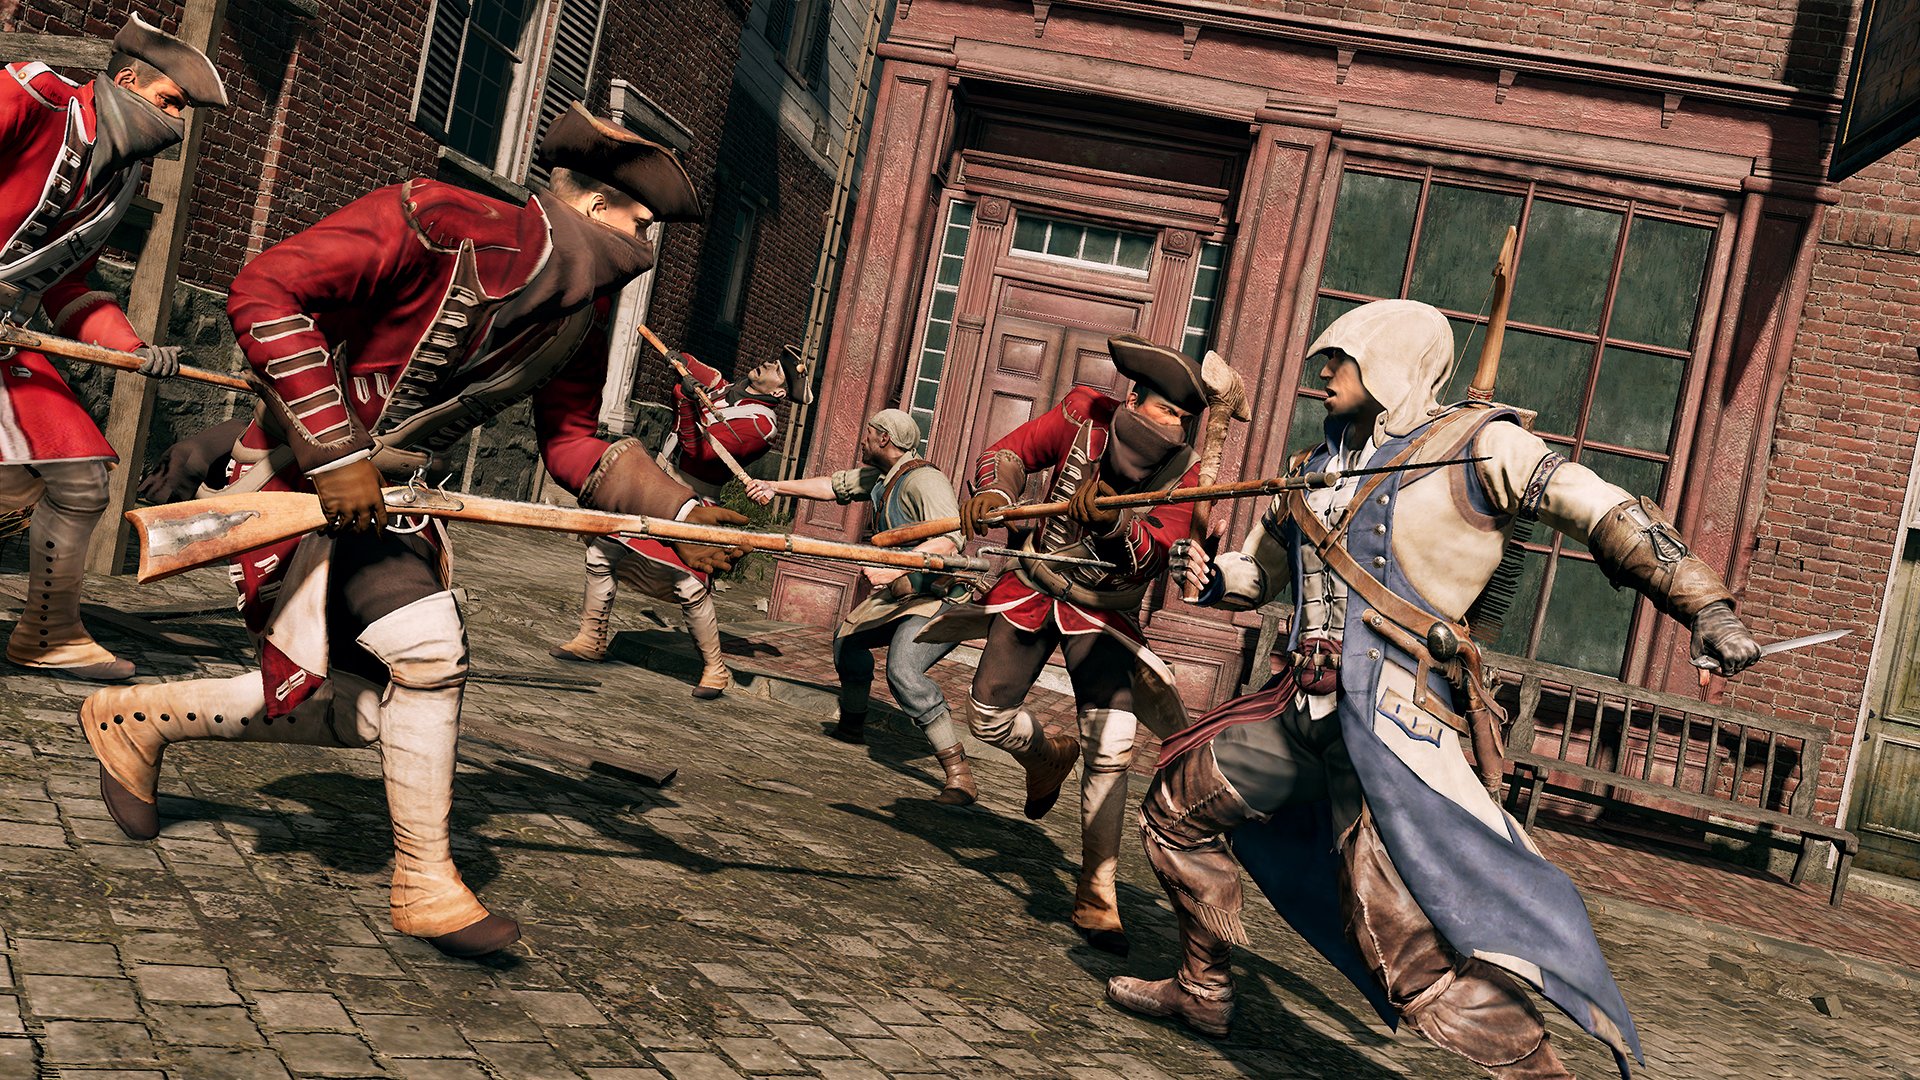 Assassins Creed Iii Remastered